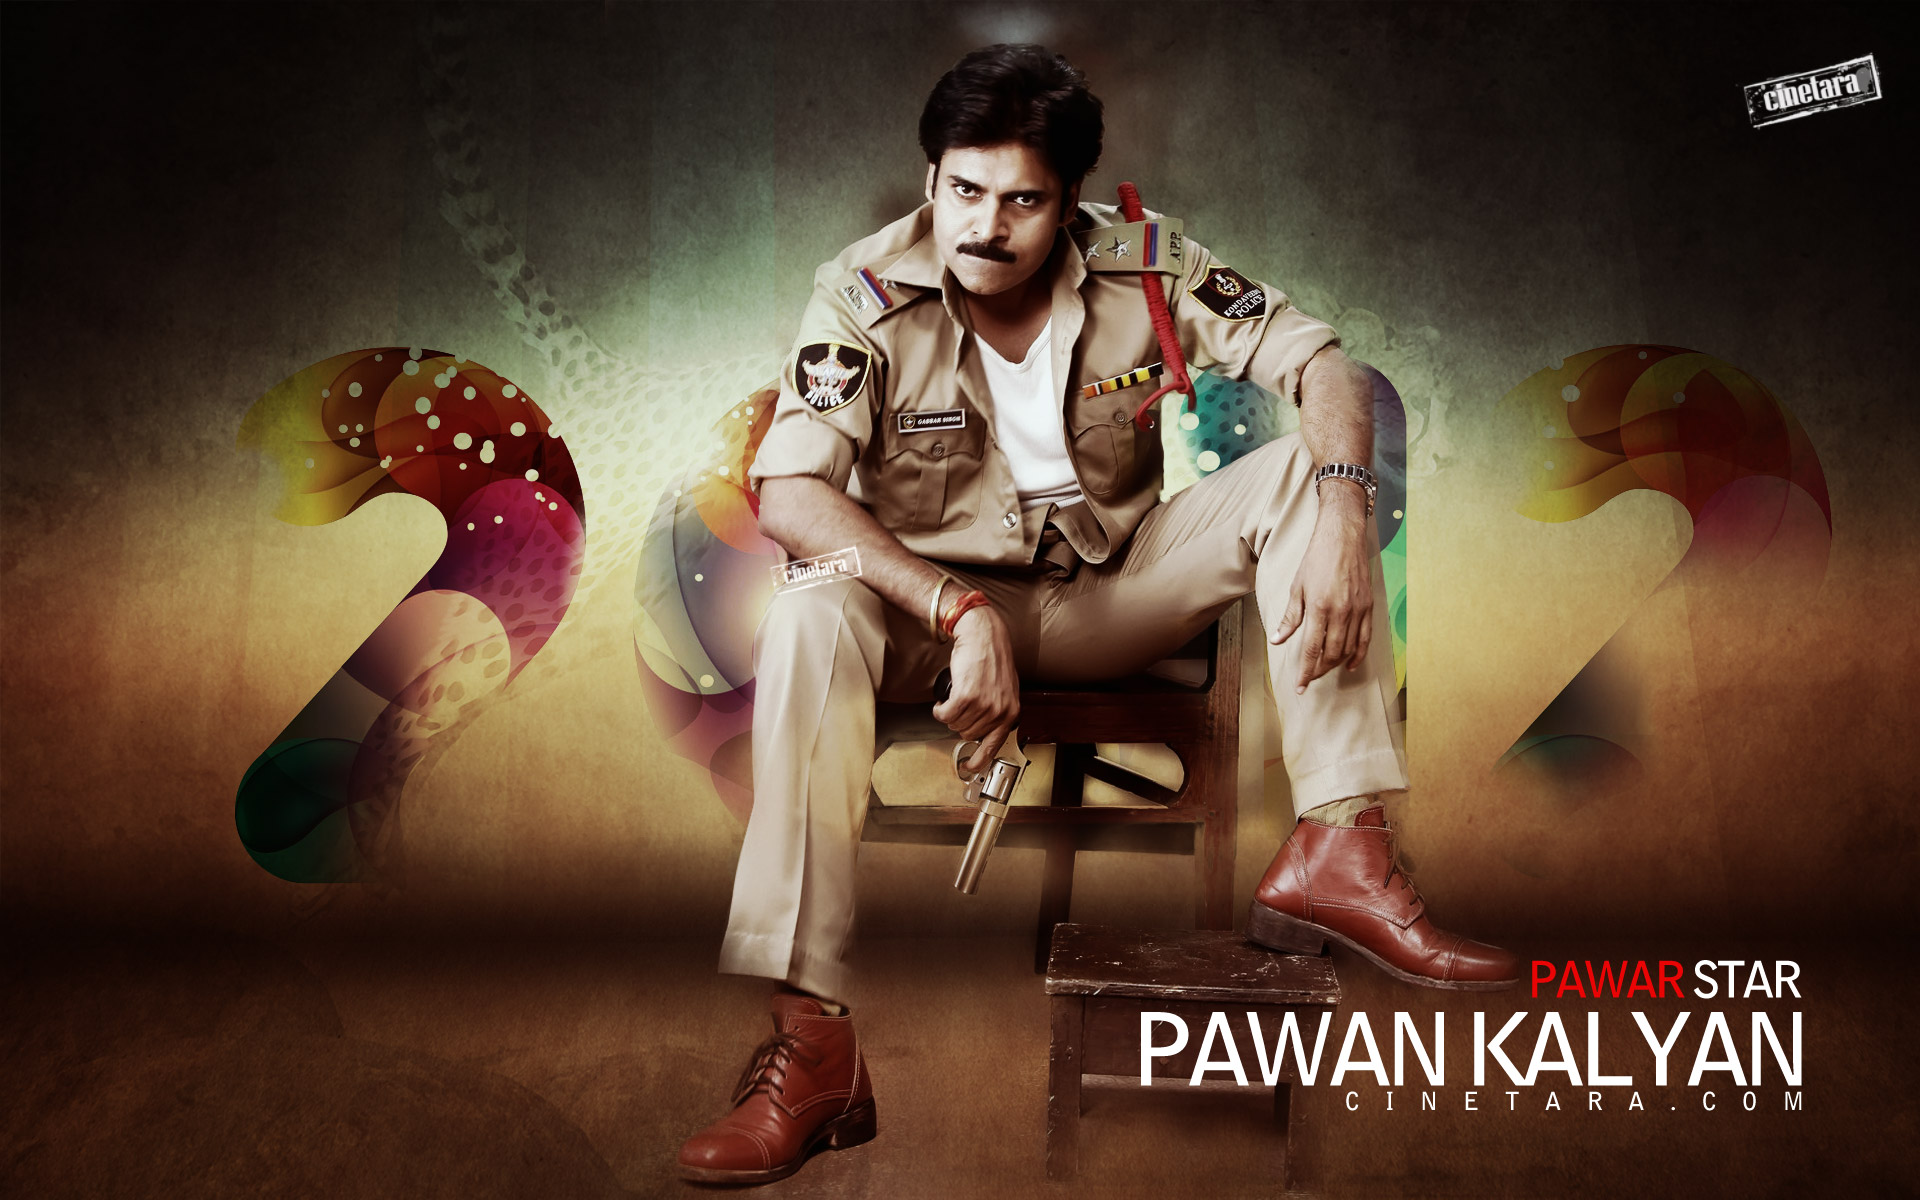 Power Star Pawan Kalyan as Gabbarsingh | Cinetara Pawan Kalyan ...